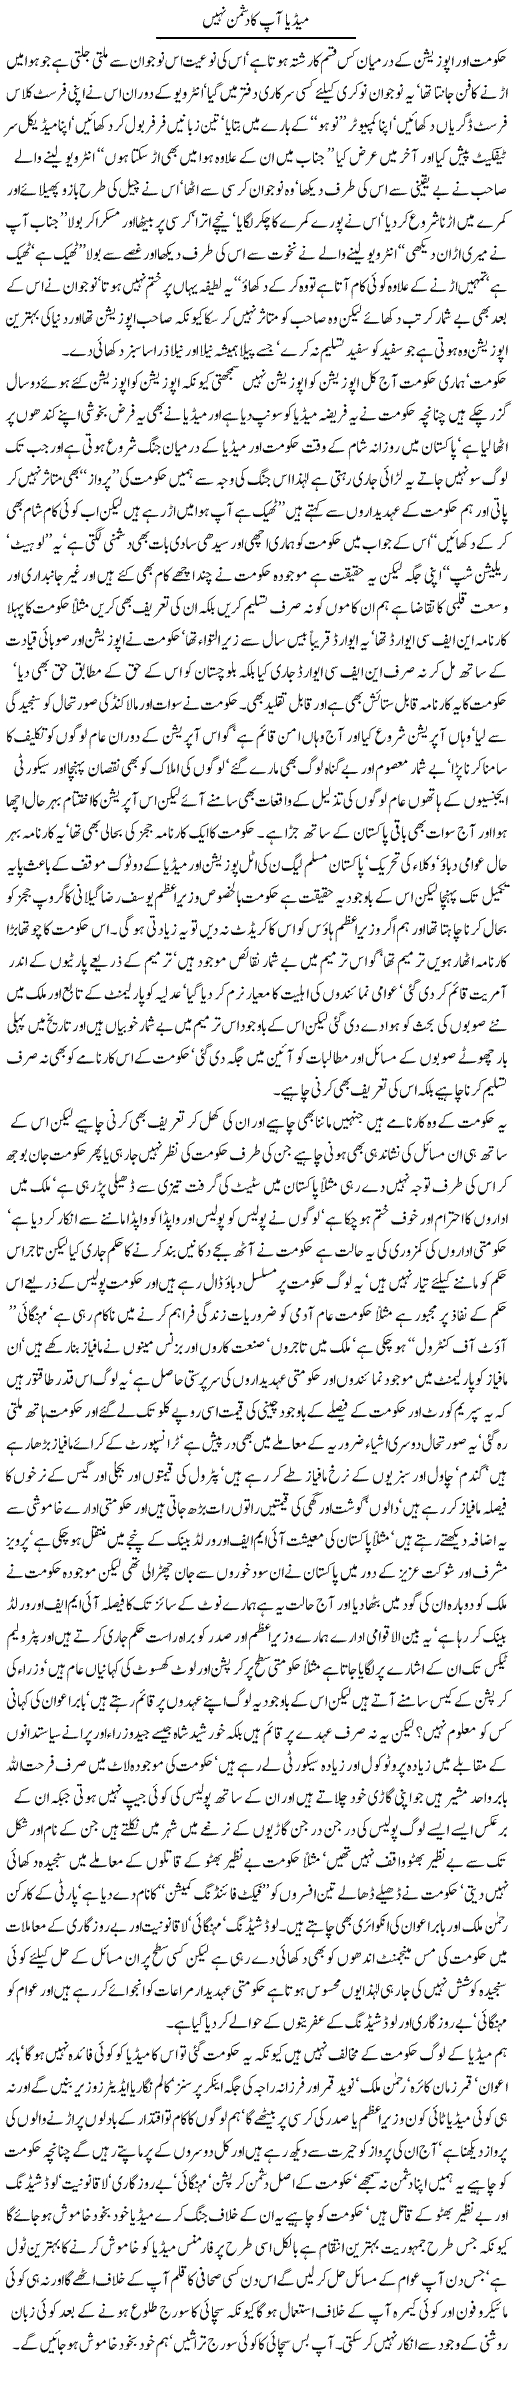 Media aap ka dushman nahi Express Column Javed Chaudhary 4 May 2010